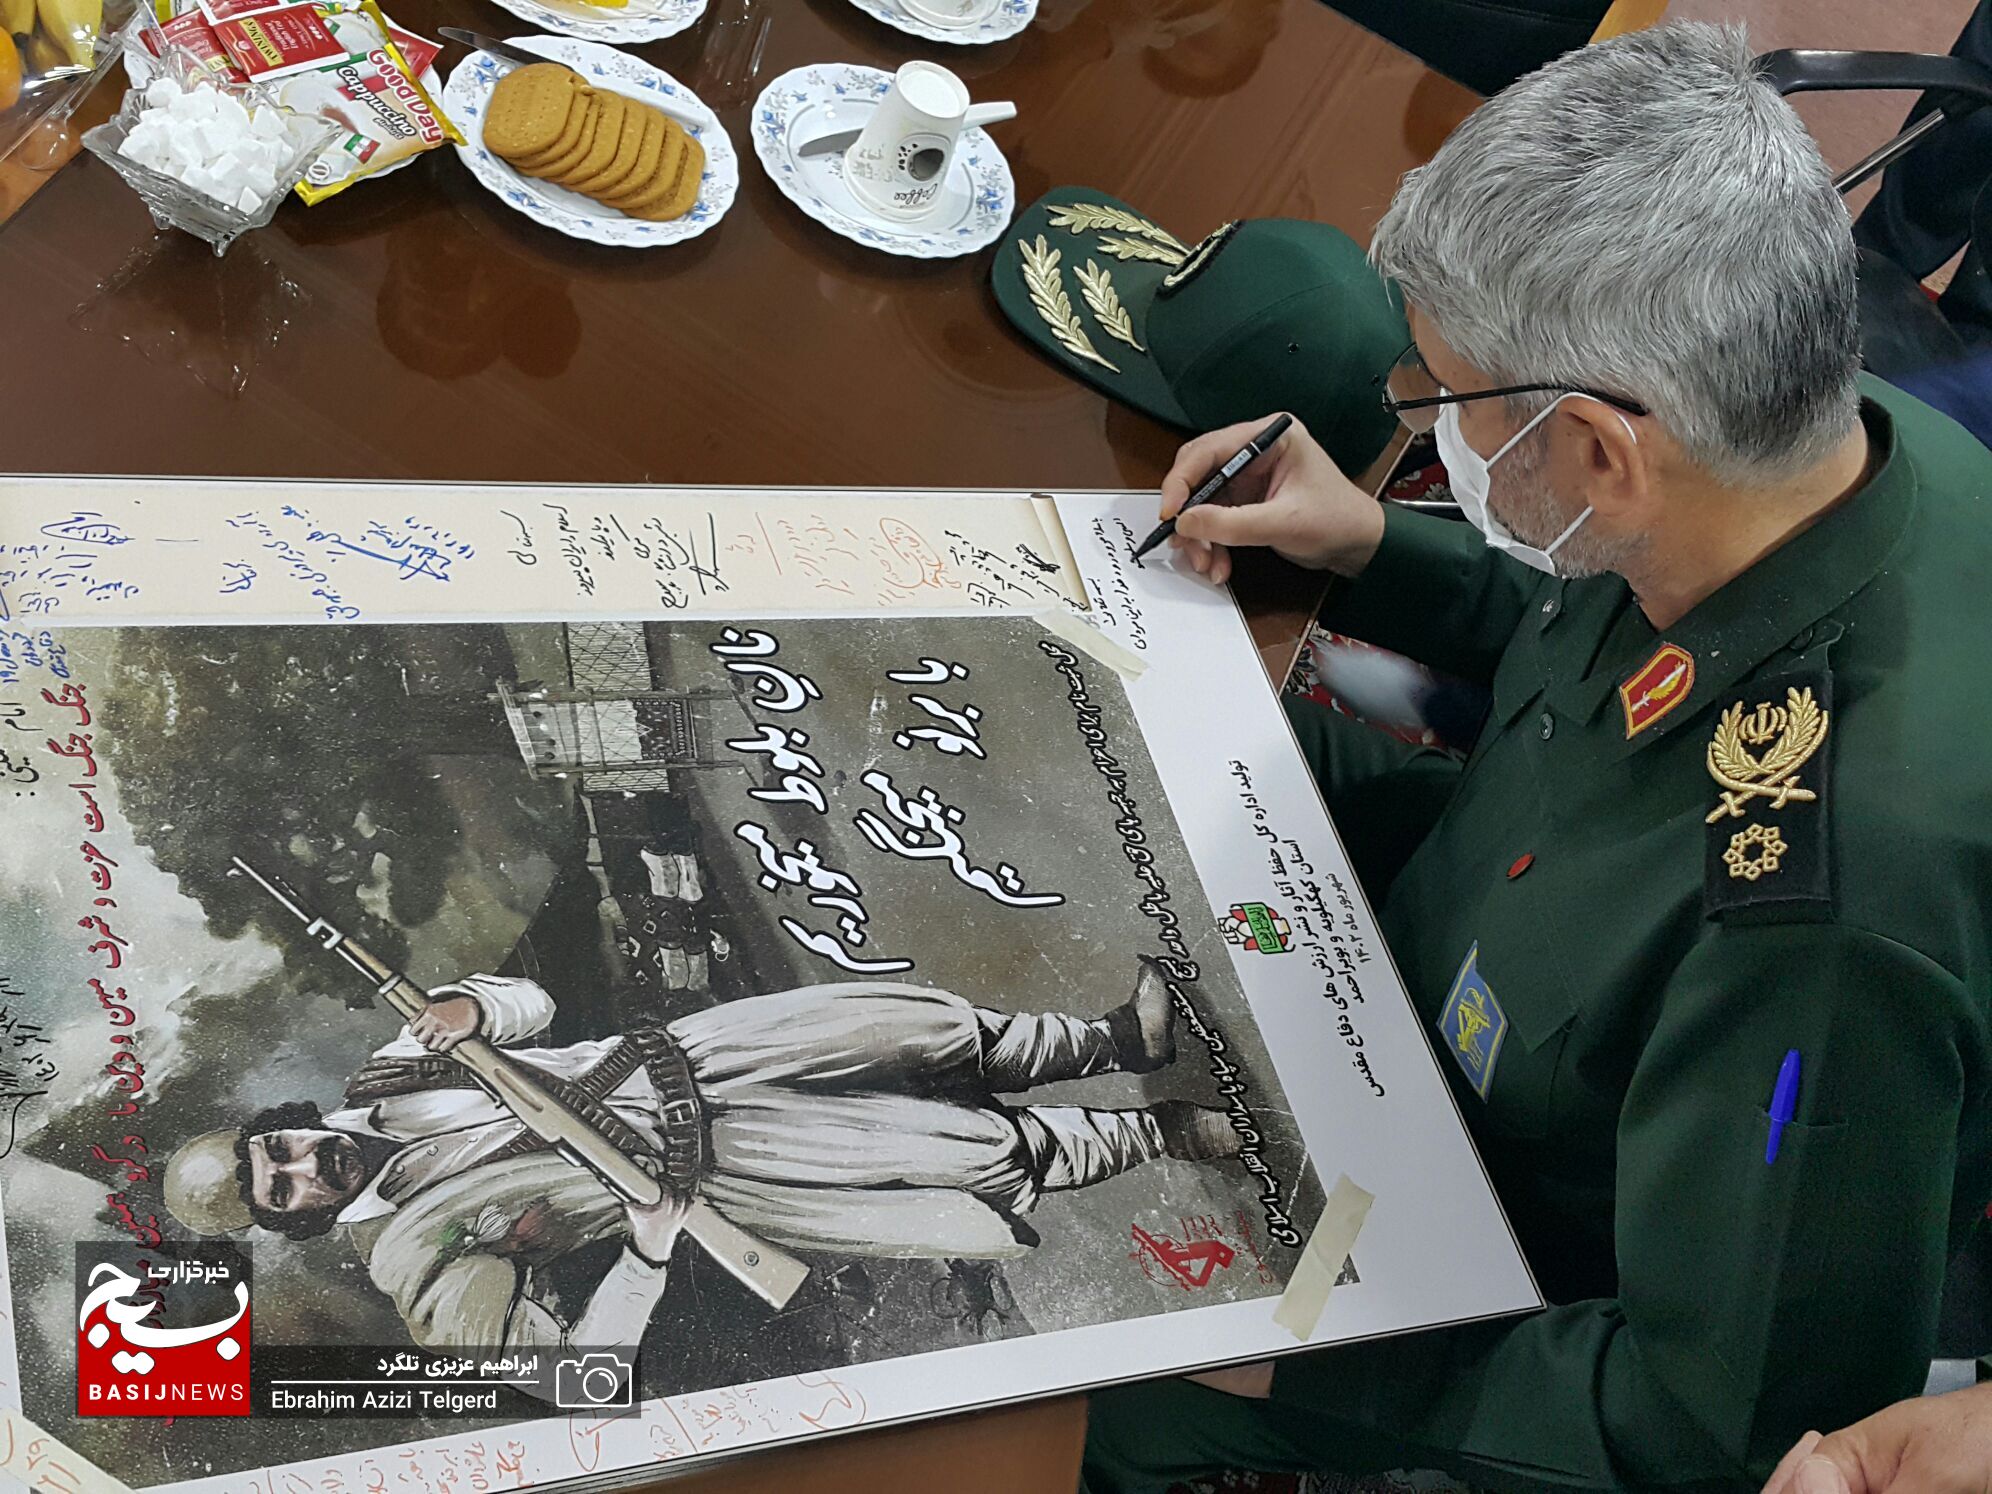 بازدید سردار علی فضلی از اولین پوستر اعزام به جبهه کهگیلویه و بویراحمد